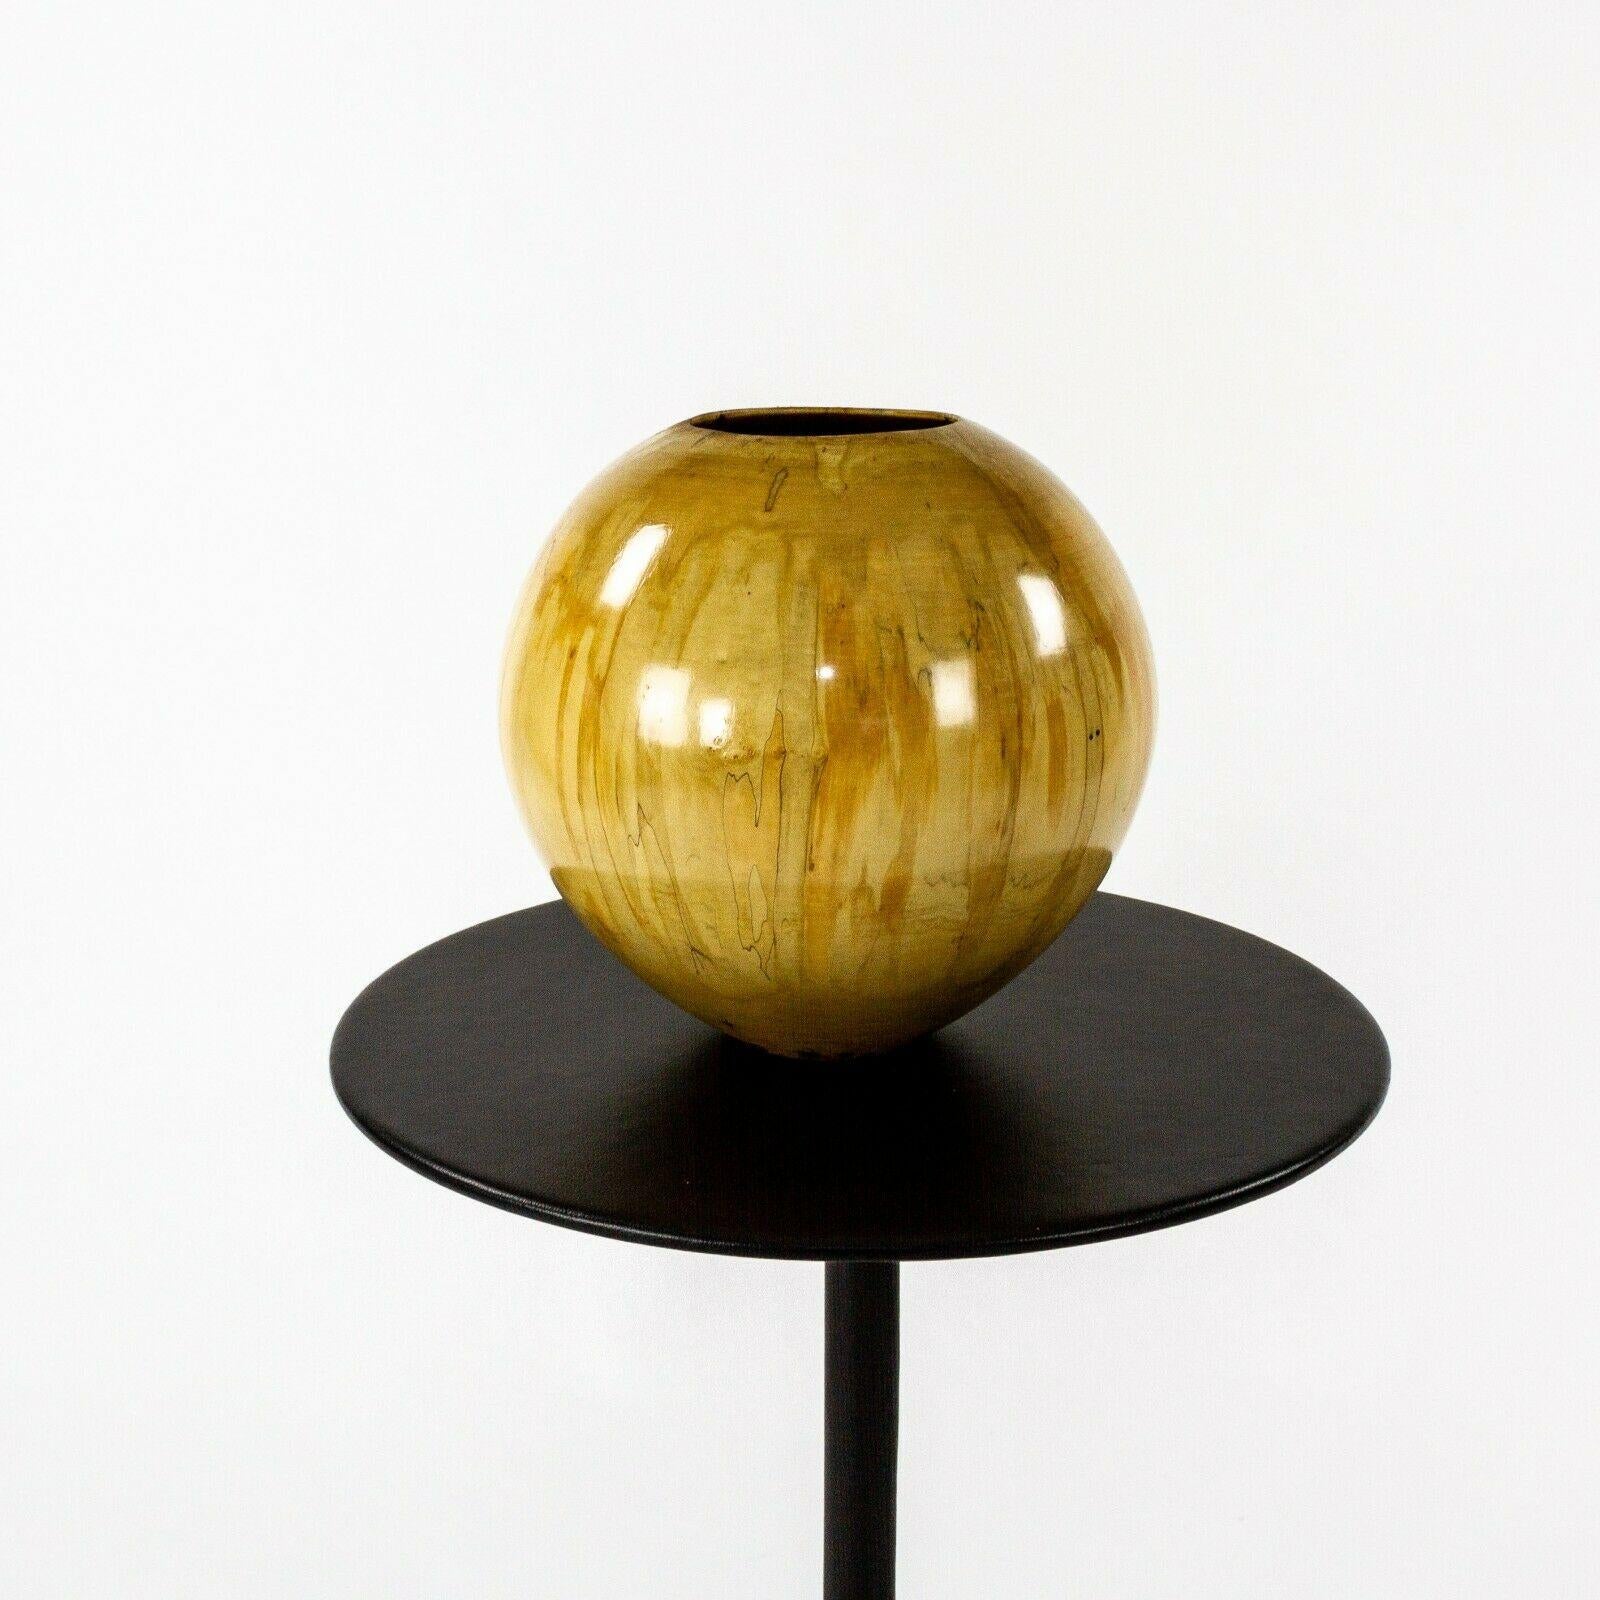 Nous proposons à la vente un magnifique bol sphérique en bois tourné en érable à feuilles de frêne (également connu sous le nom d'acer negundo) avec une finition très brillante, produit par le célèbre ébéniste Philip Moulthrop. L'œuvre provient